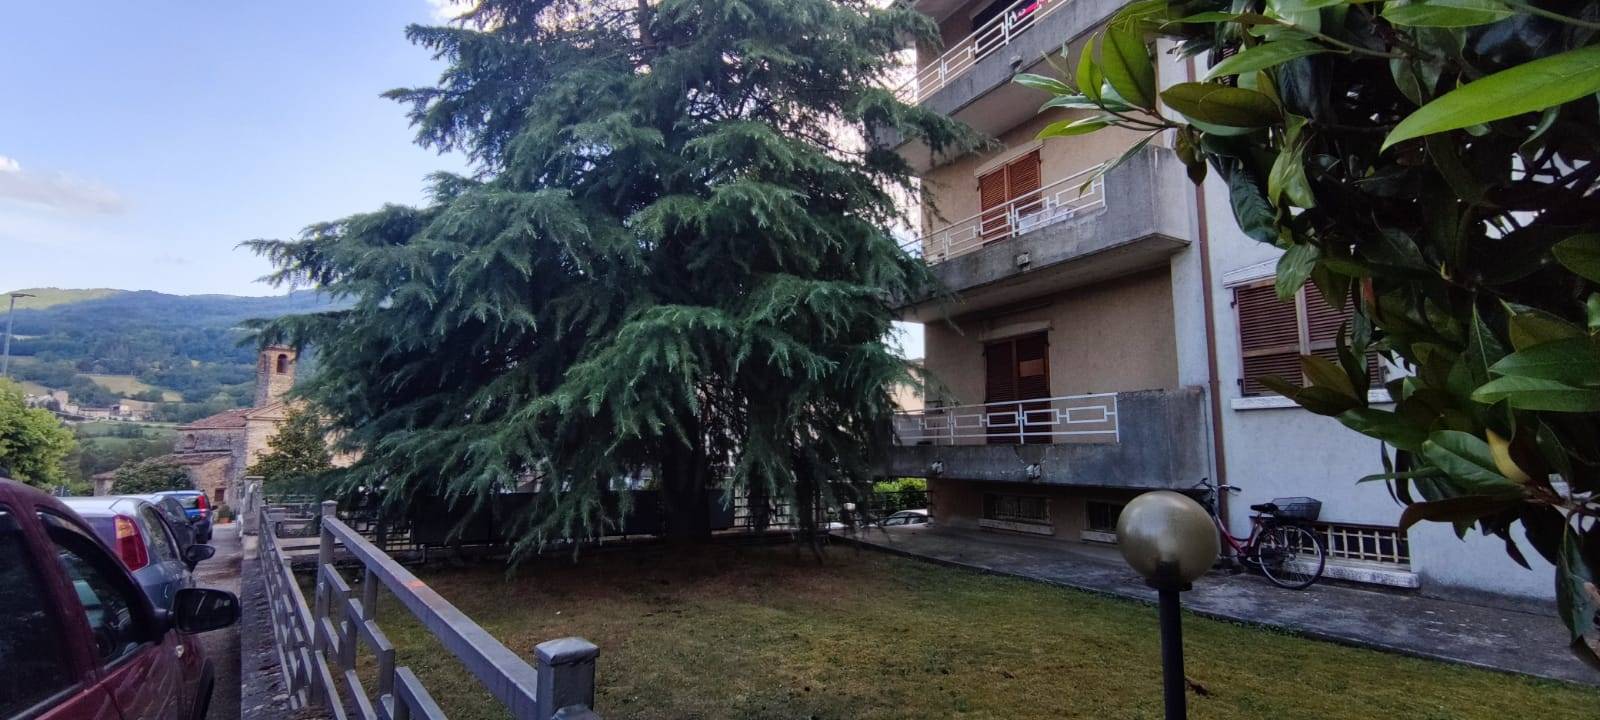 Appartamento in vendita a Travo, 3 locali, prezzo € 48.000 | PortaleAgenzieImmobiliari.it